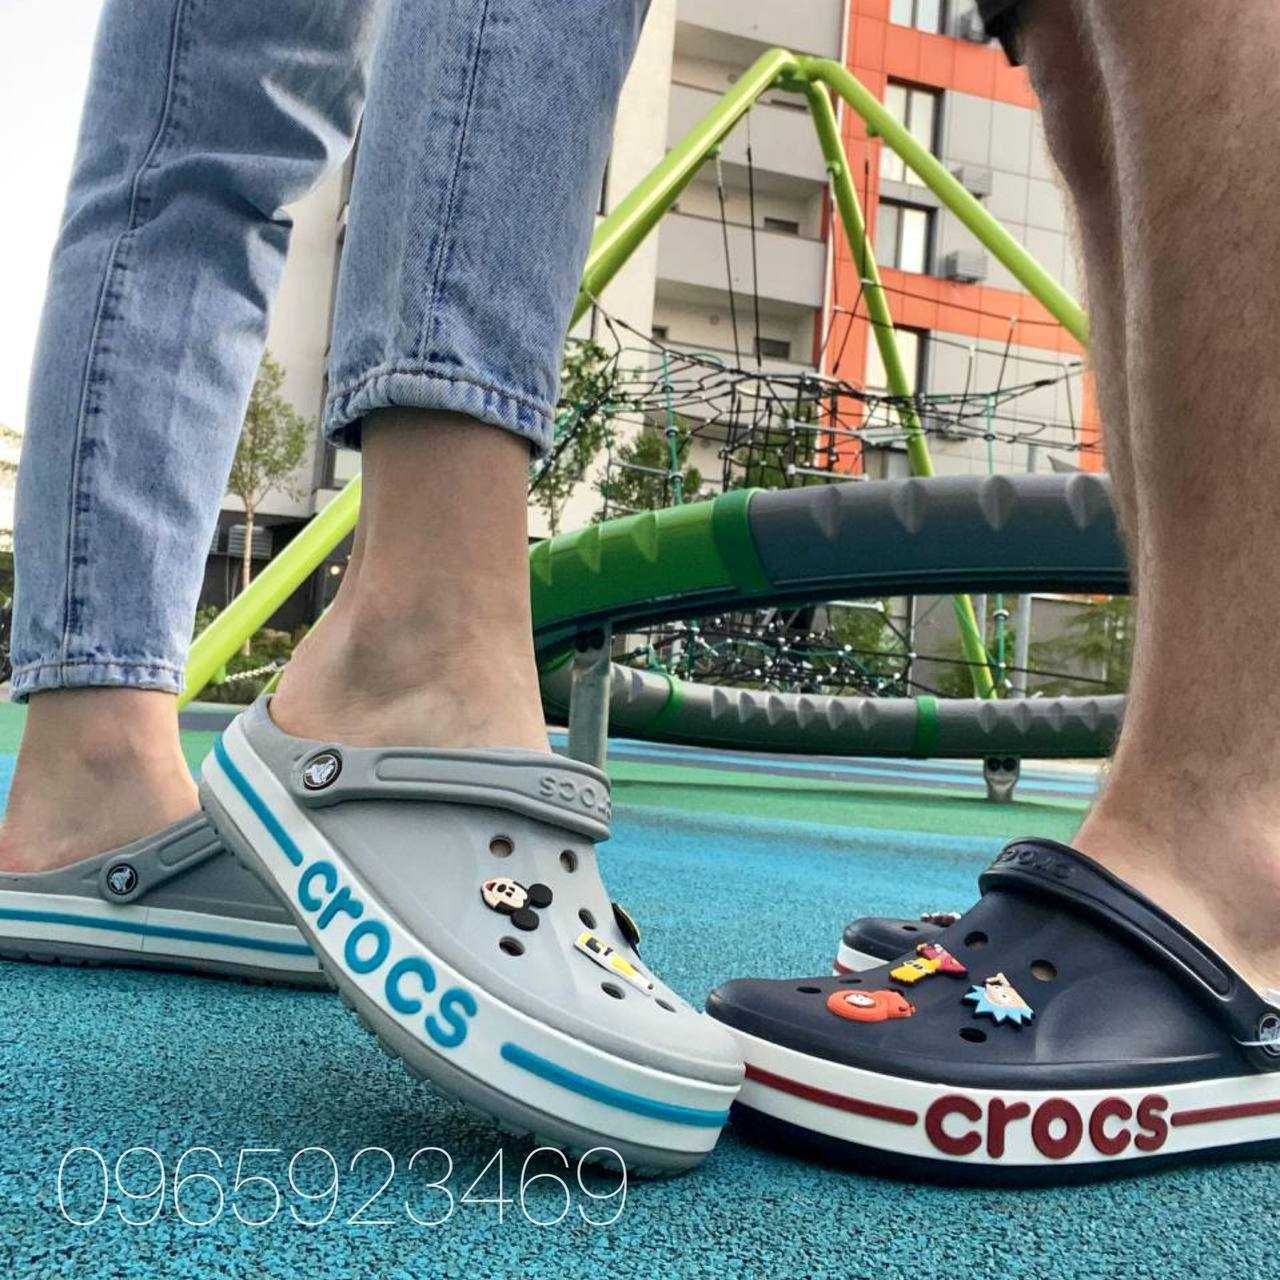 Великий вибір Оригінальних крокс Crocs чоловічі та жіночі моделі 36-45